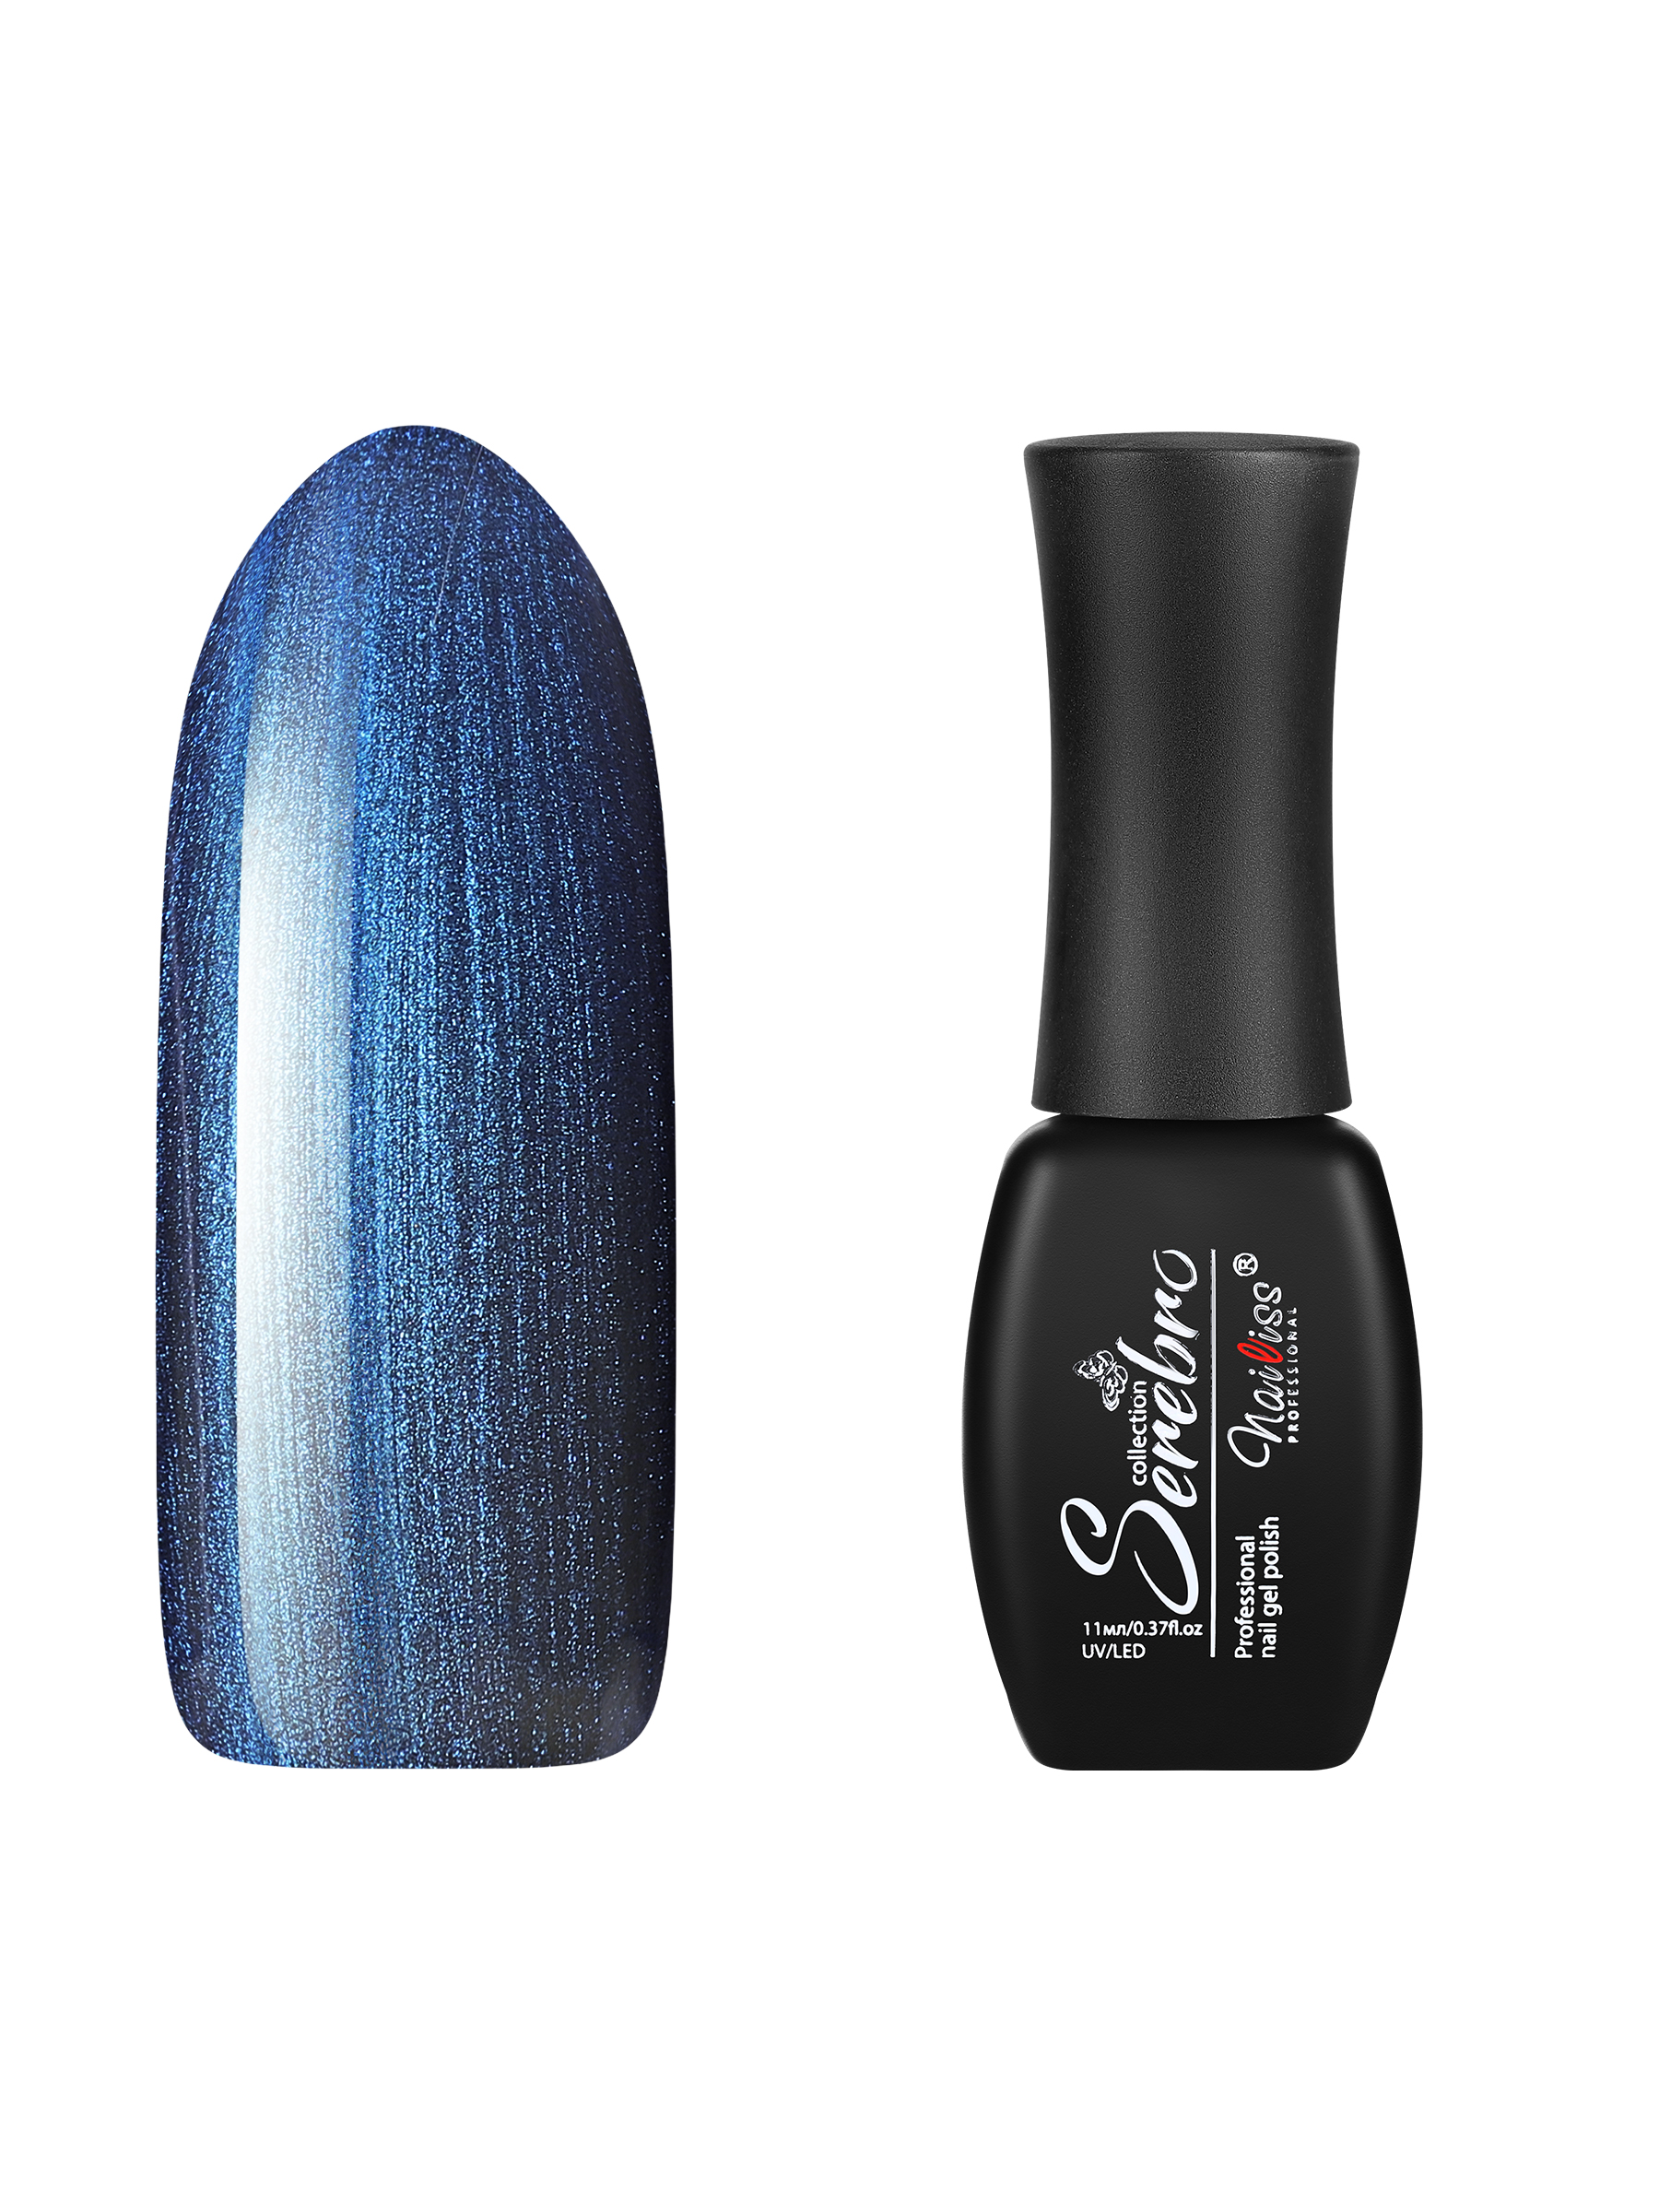 Гель-лак для ногтей Serebro с блестками, плотный, насыщенный с перламутром, голубой, 11 мл грунт для аквариума triton крупный блестящий голубой 2 шт по 800 г